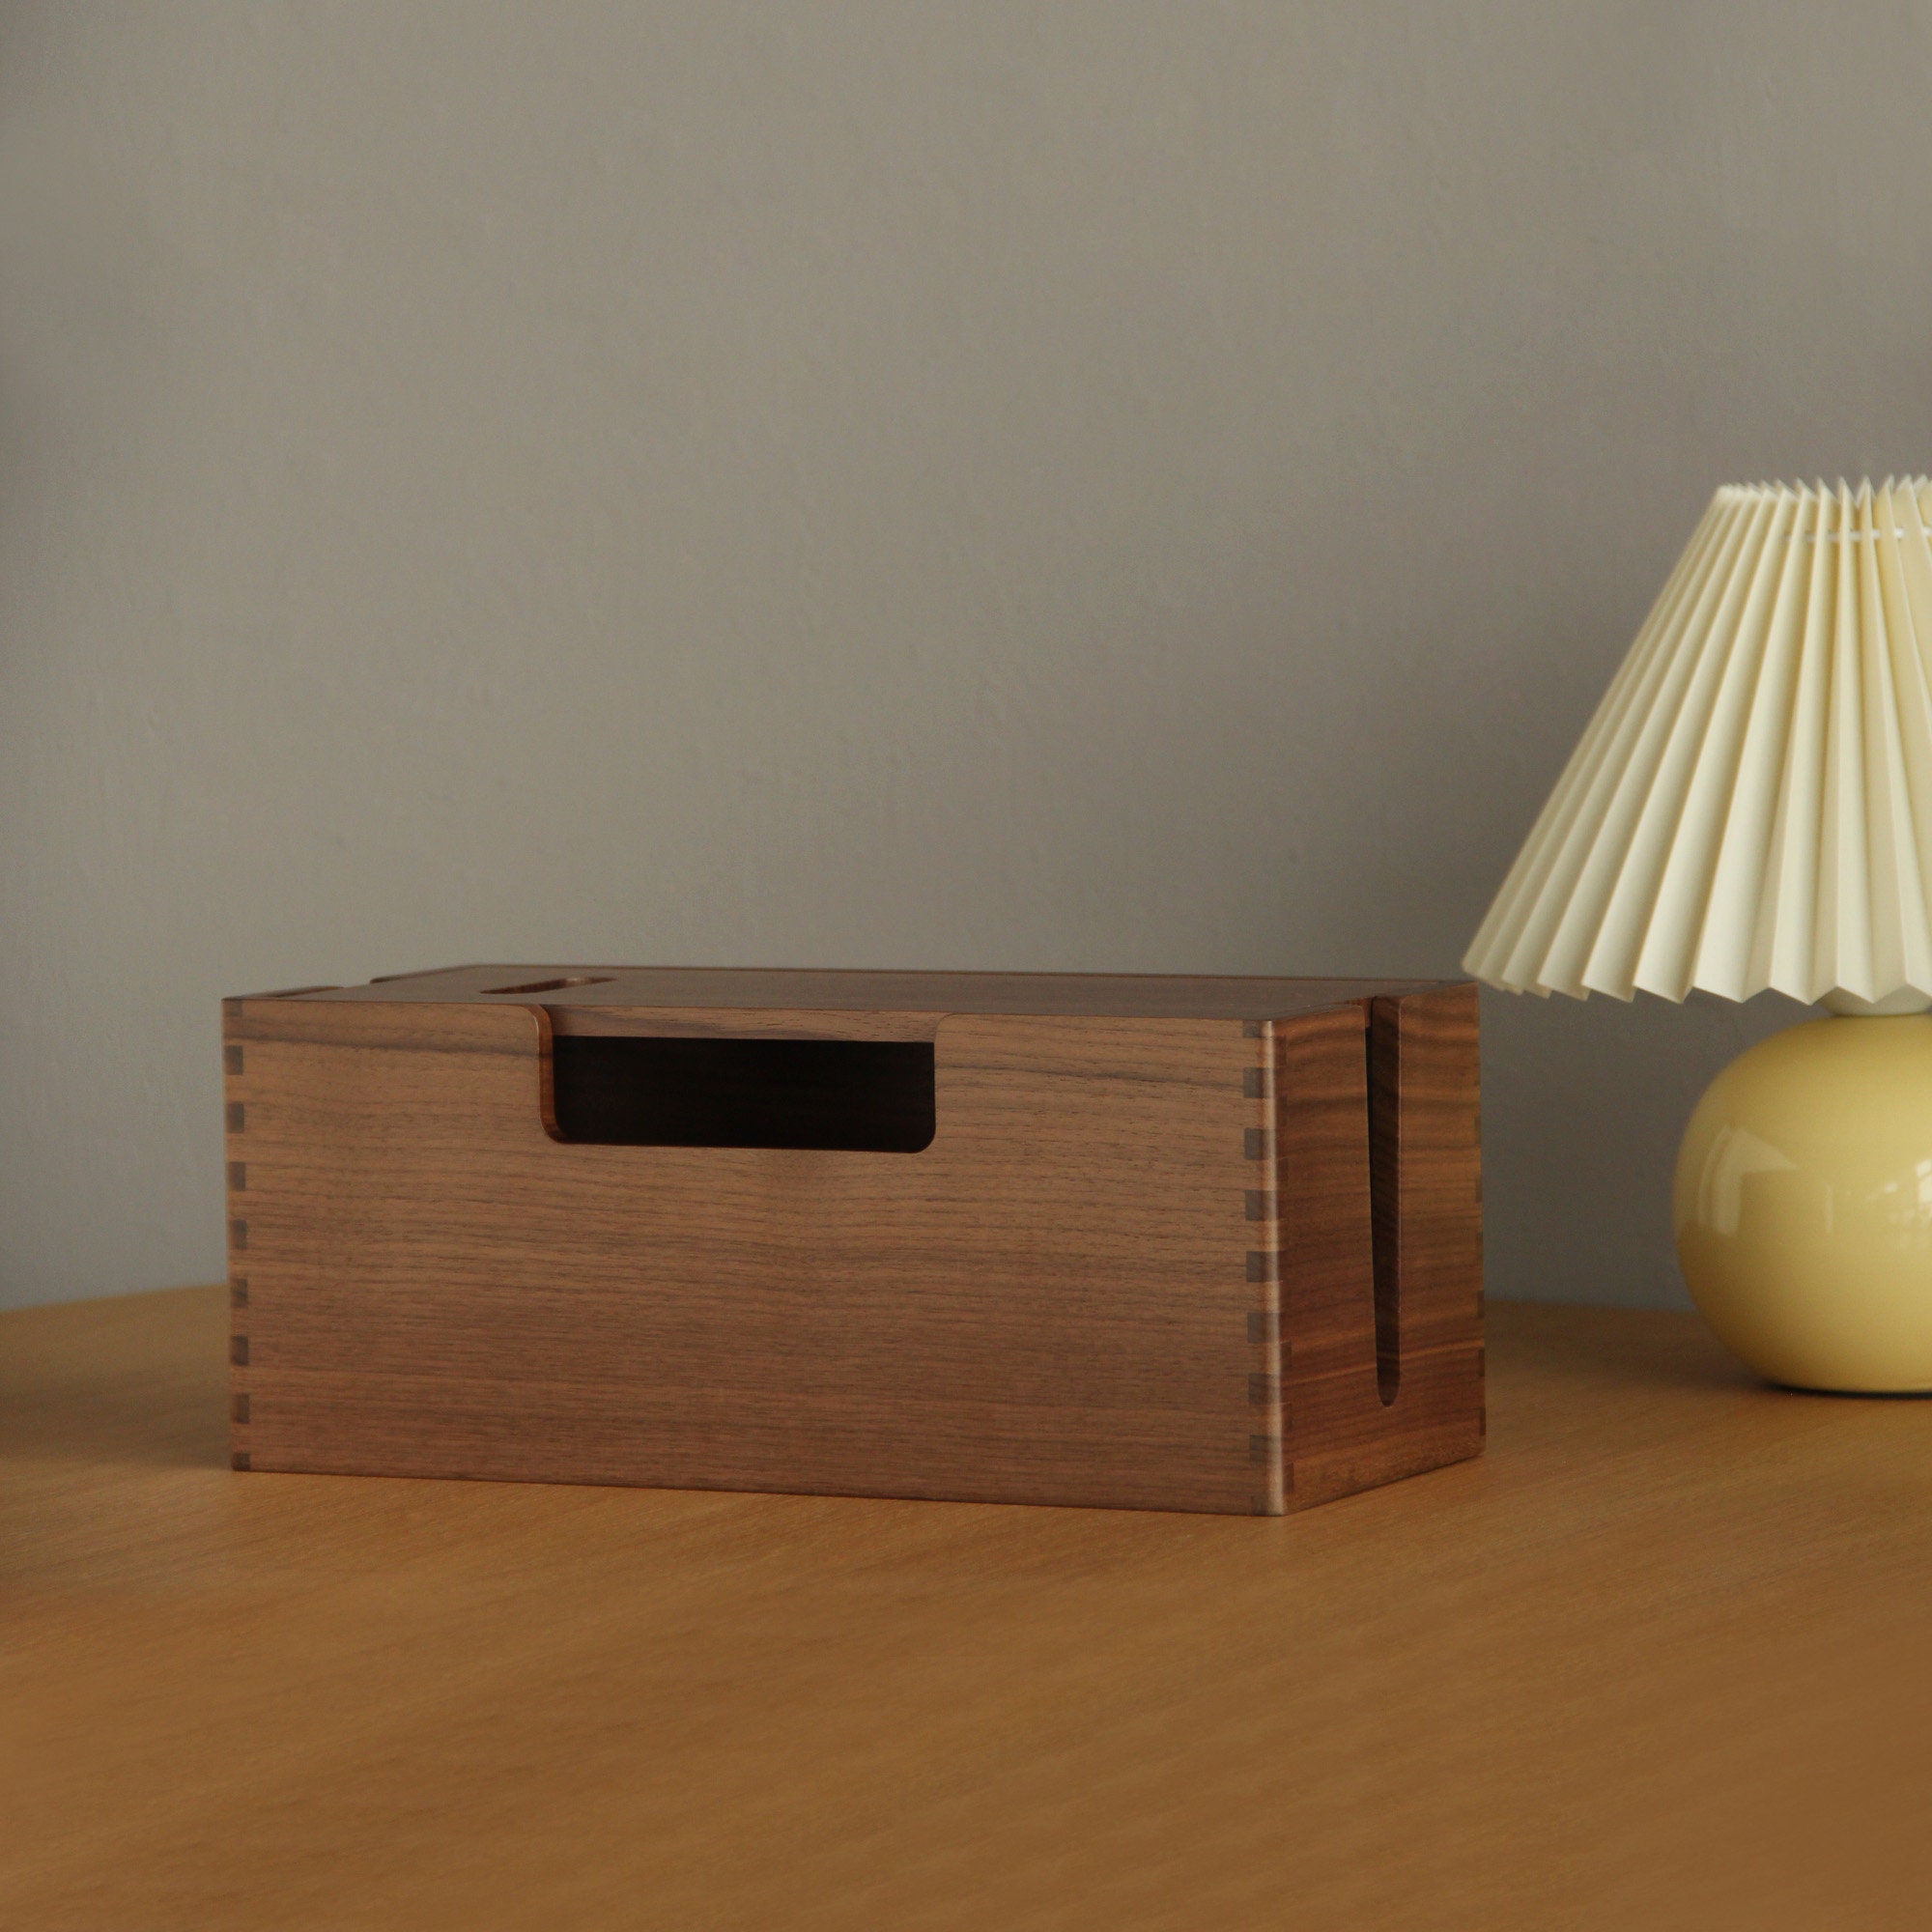 Steckdosenabdeckung aus Holz, Steckdosenschutzbox für Schlafzimmer und